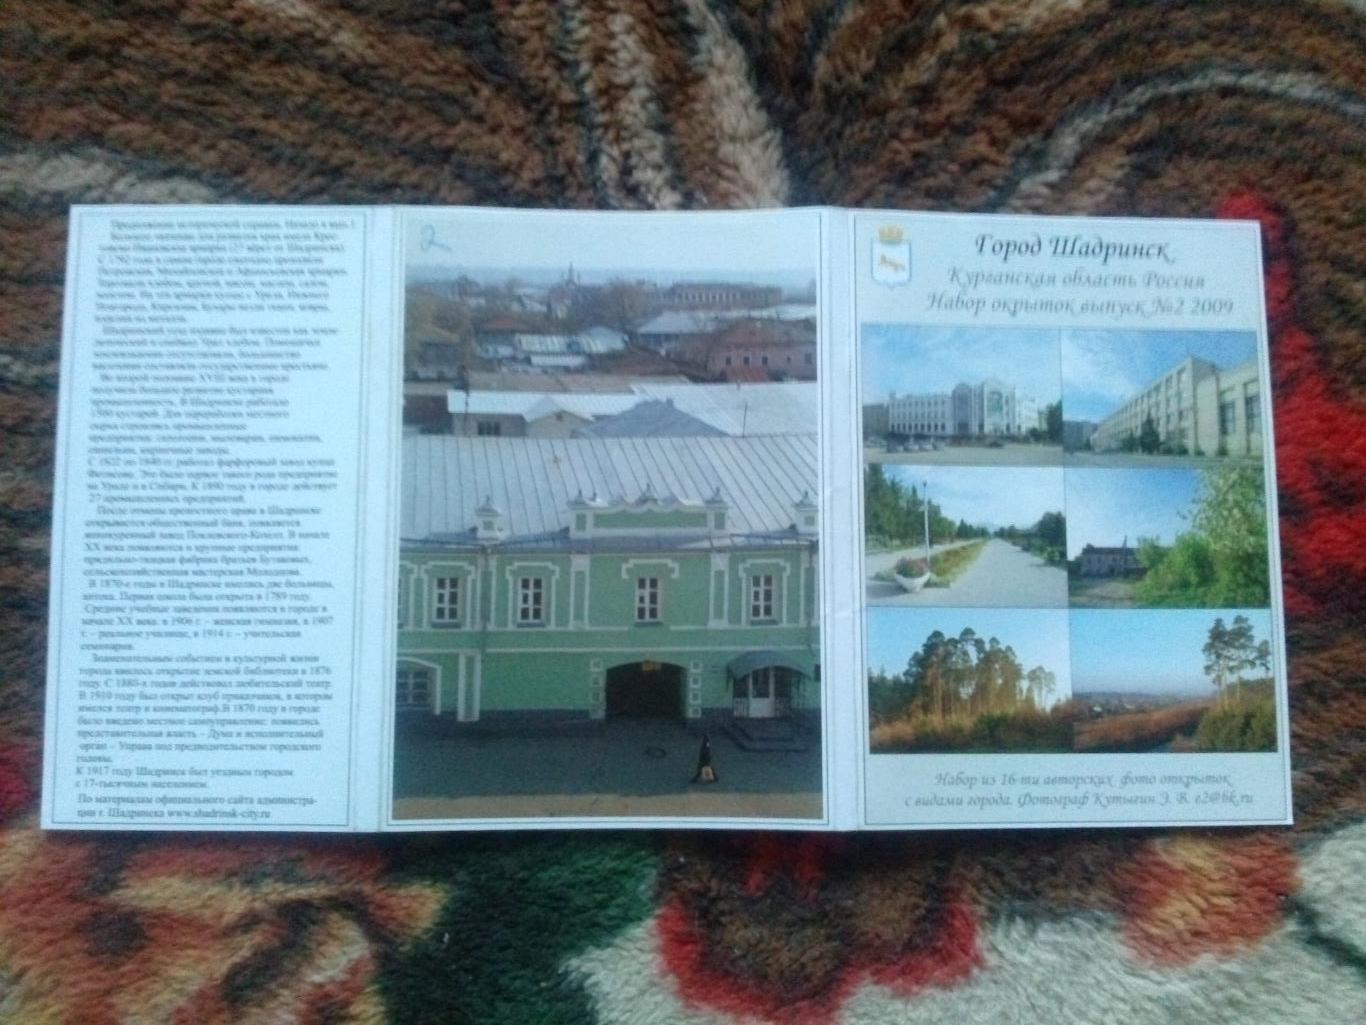 Города России : Шадринск (Курганская область) 2009 г. полный набор - 16 открыток 1